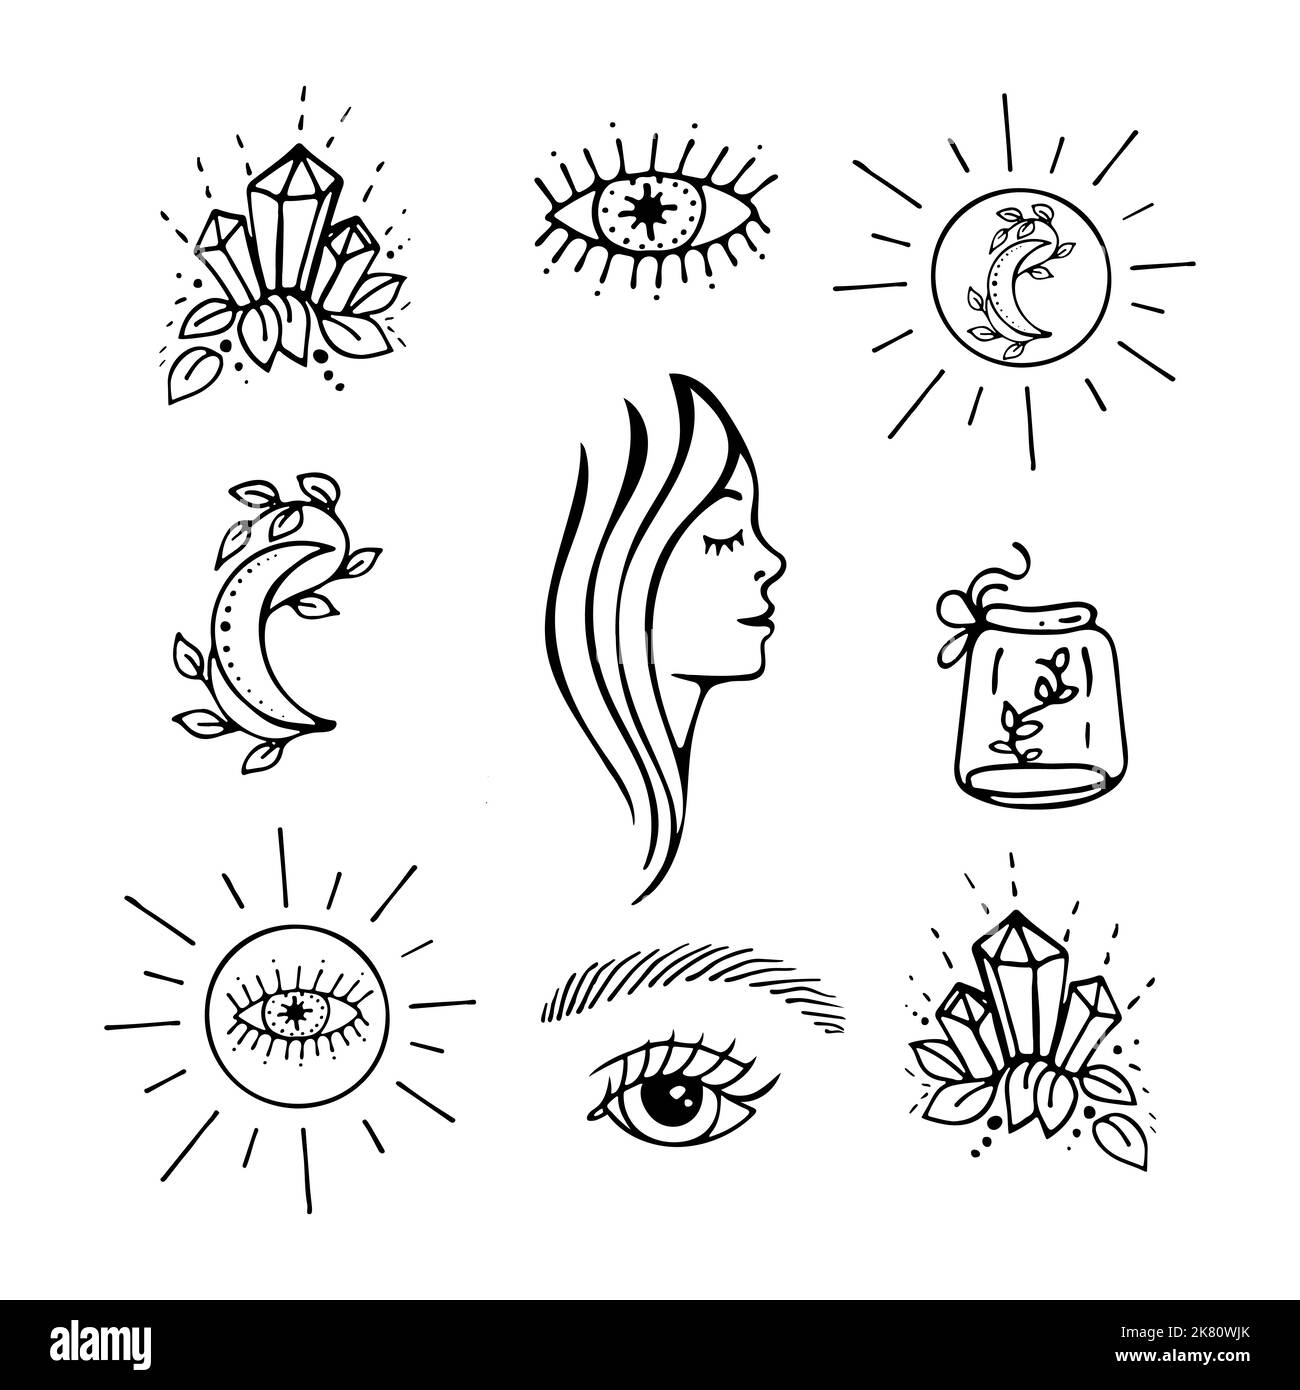 Handgezeichnetes Set mit esoterischen Symbolen. Vektor kritzelt Auge, Mond, Sonne, Frauenprofil, Kristalle Stock Vektor